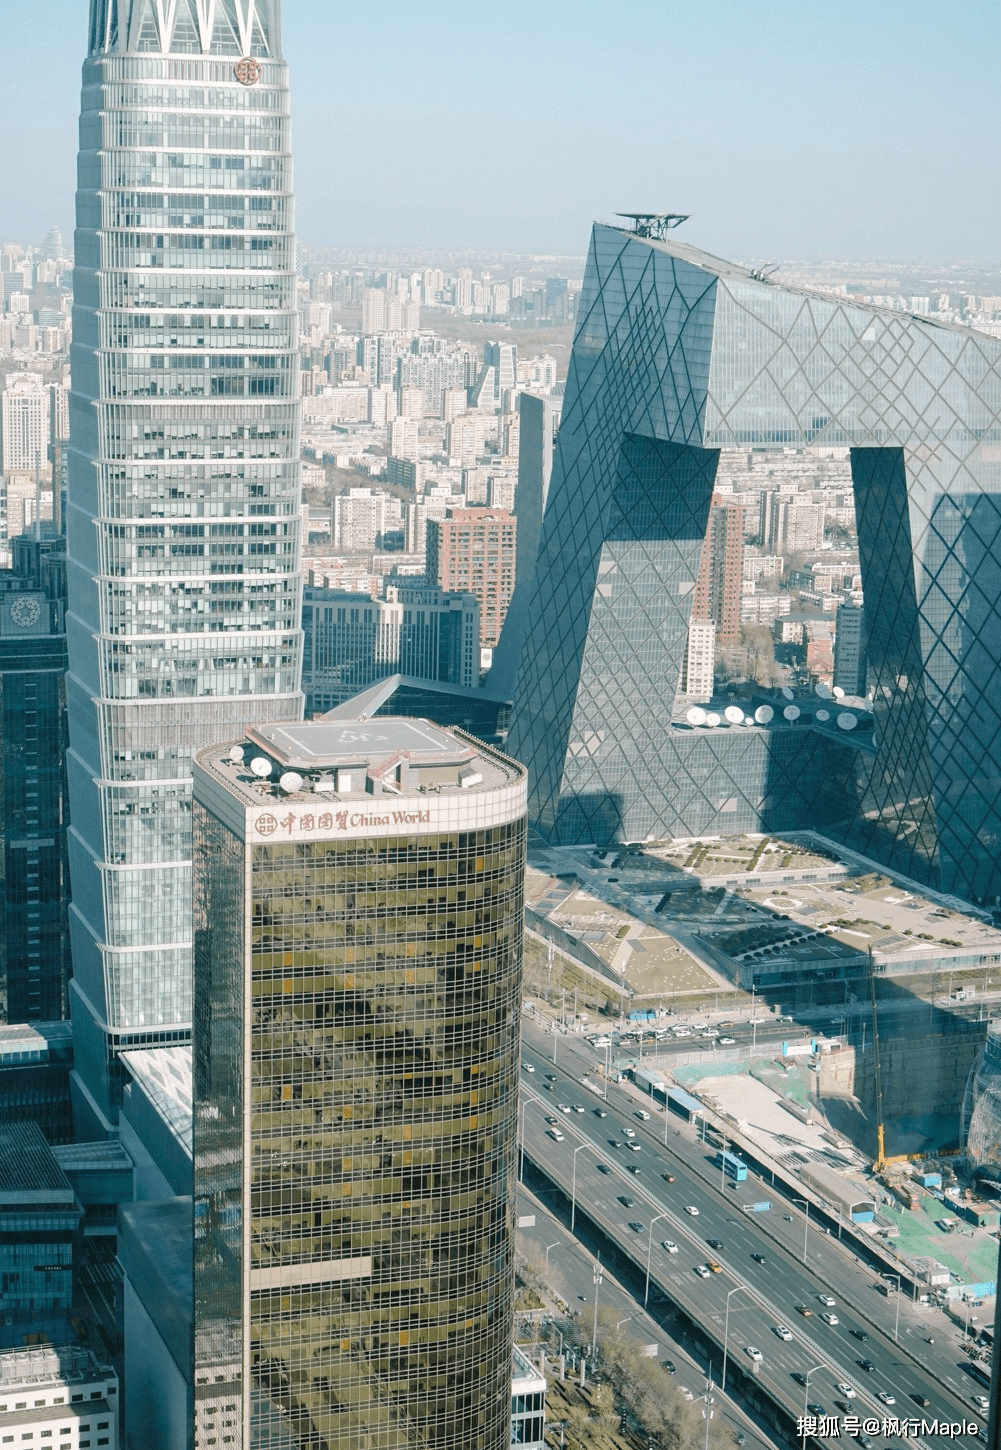 国贸,北京一大地标,新起的高楼一栋又一栋.